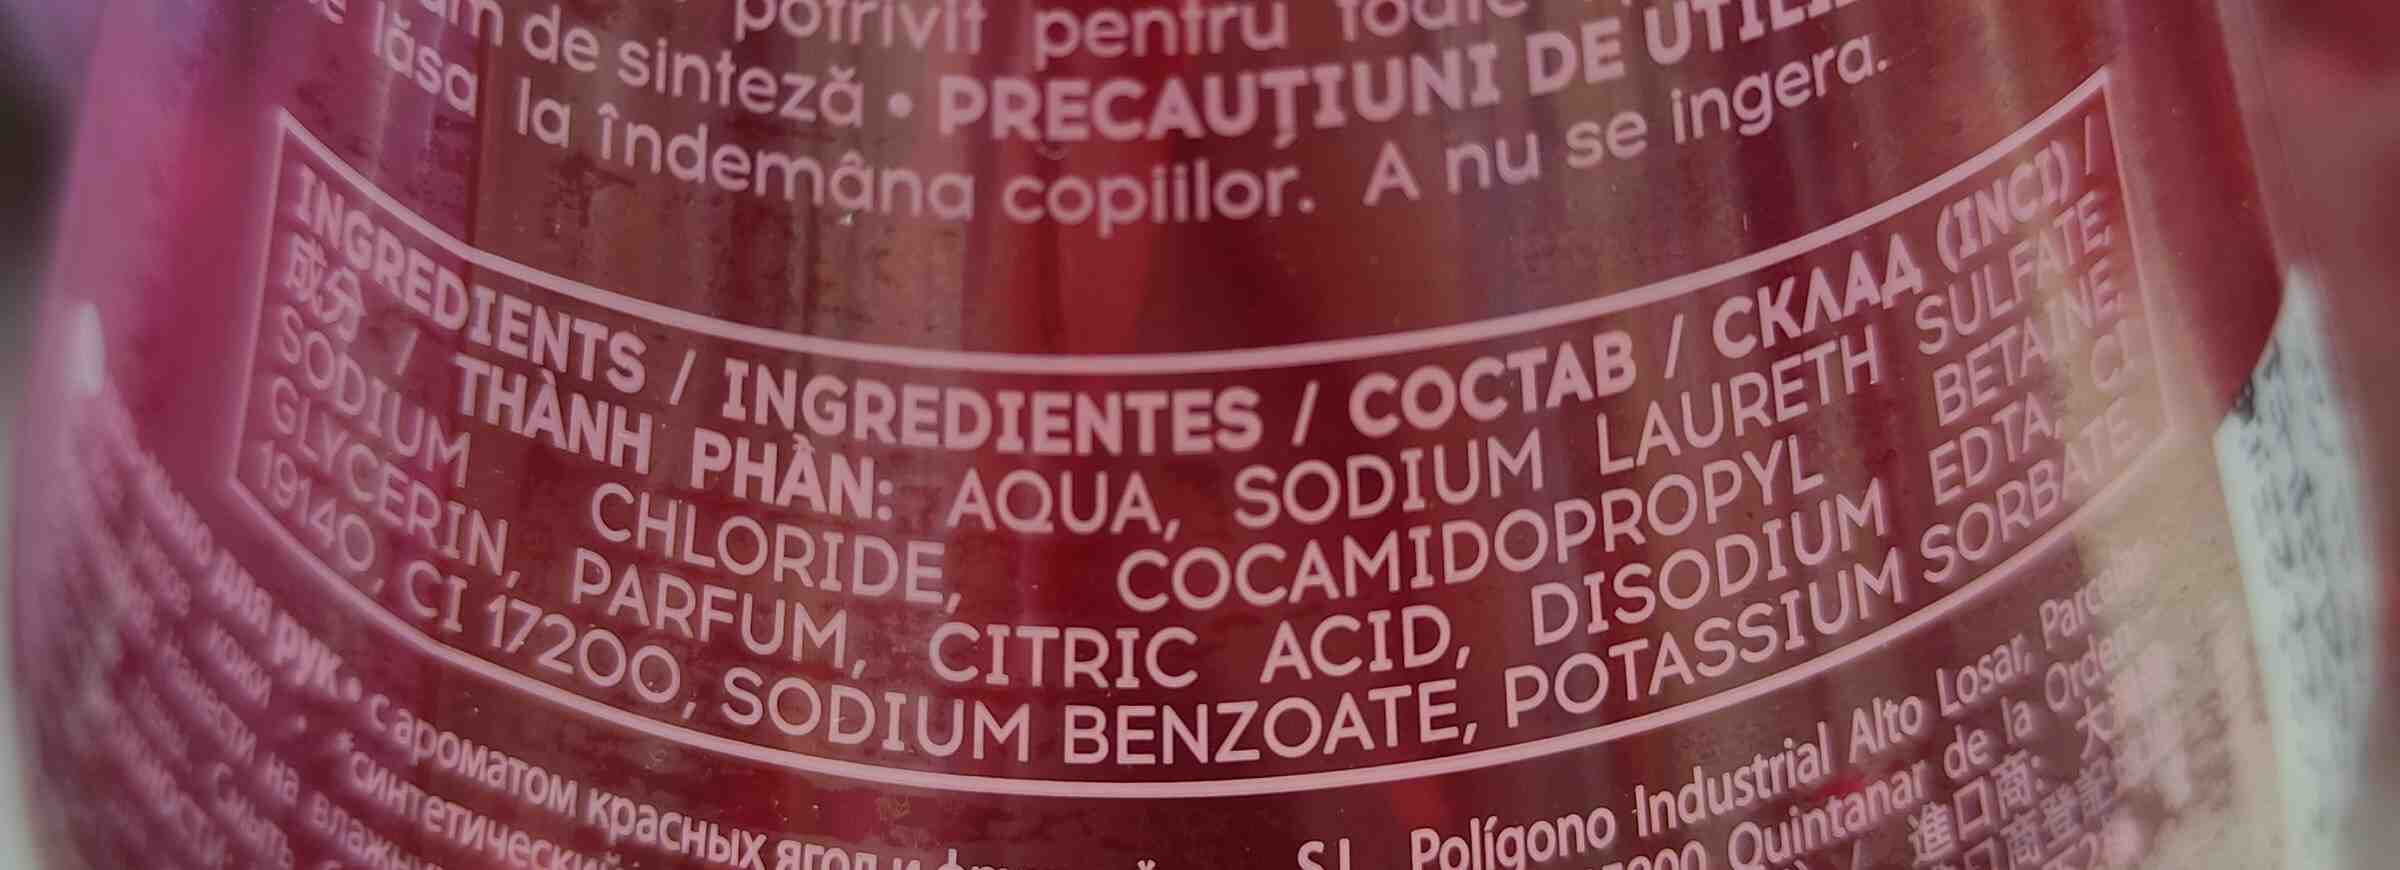 Cosmia gel lavant mains fruits rouges - Ingredientes - en